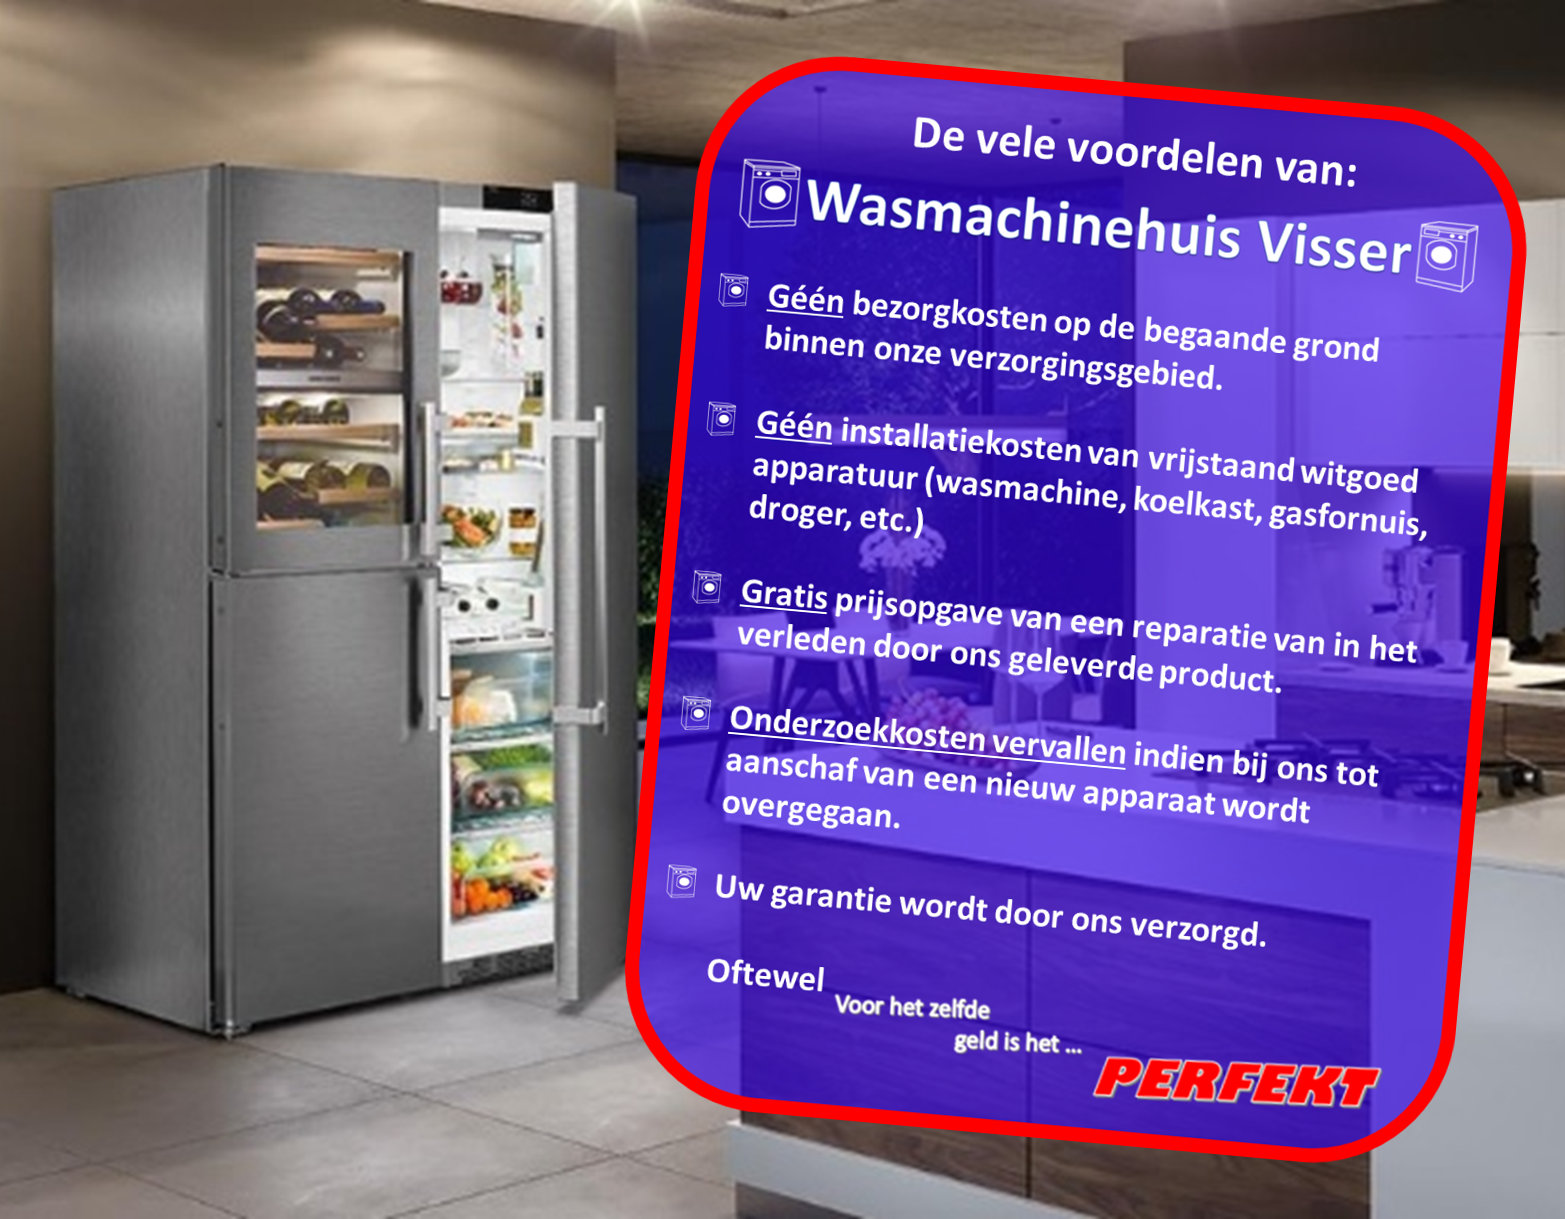 De voordelen van Wasmachinehuis Visser.